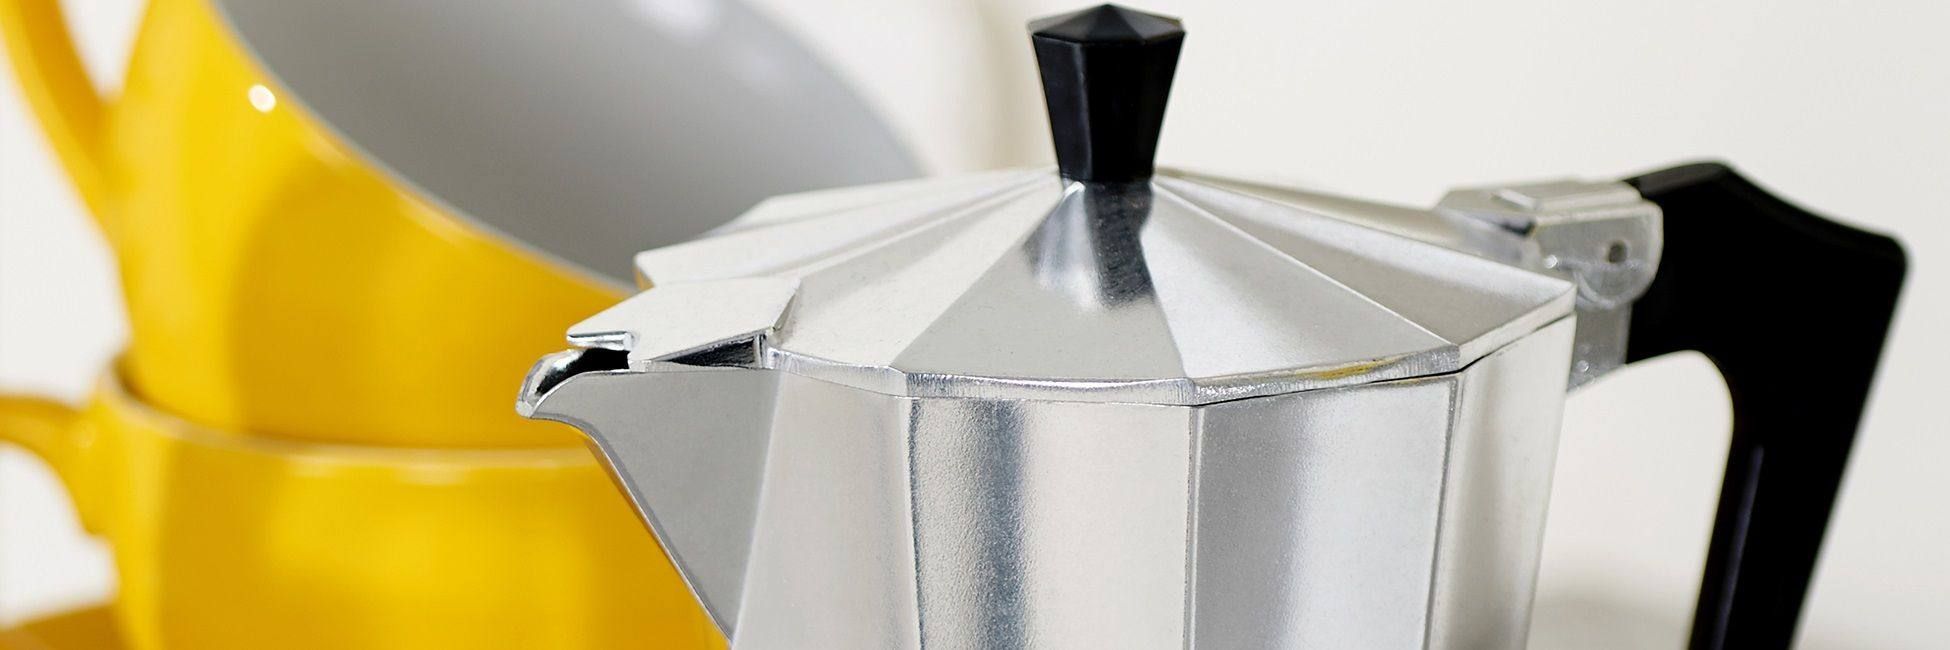 Как выбрать гейзерную кофеварку: варим насыщенный кофе по-итальянски